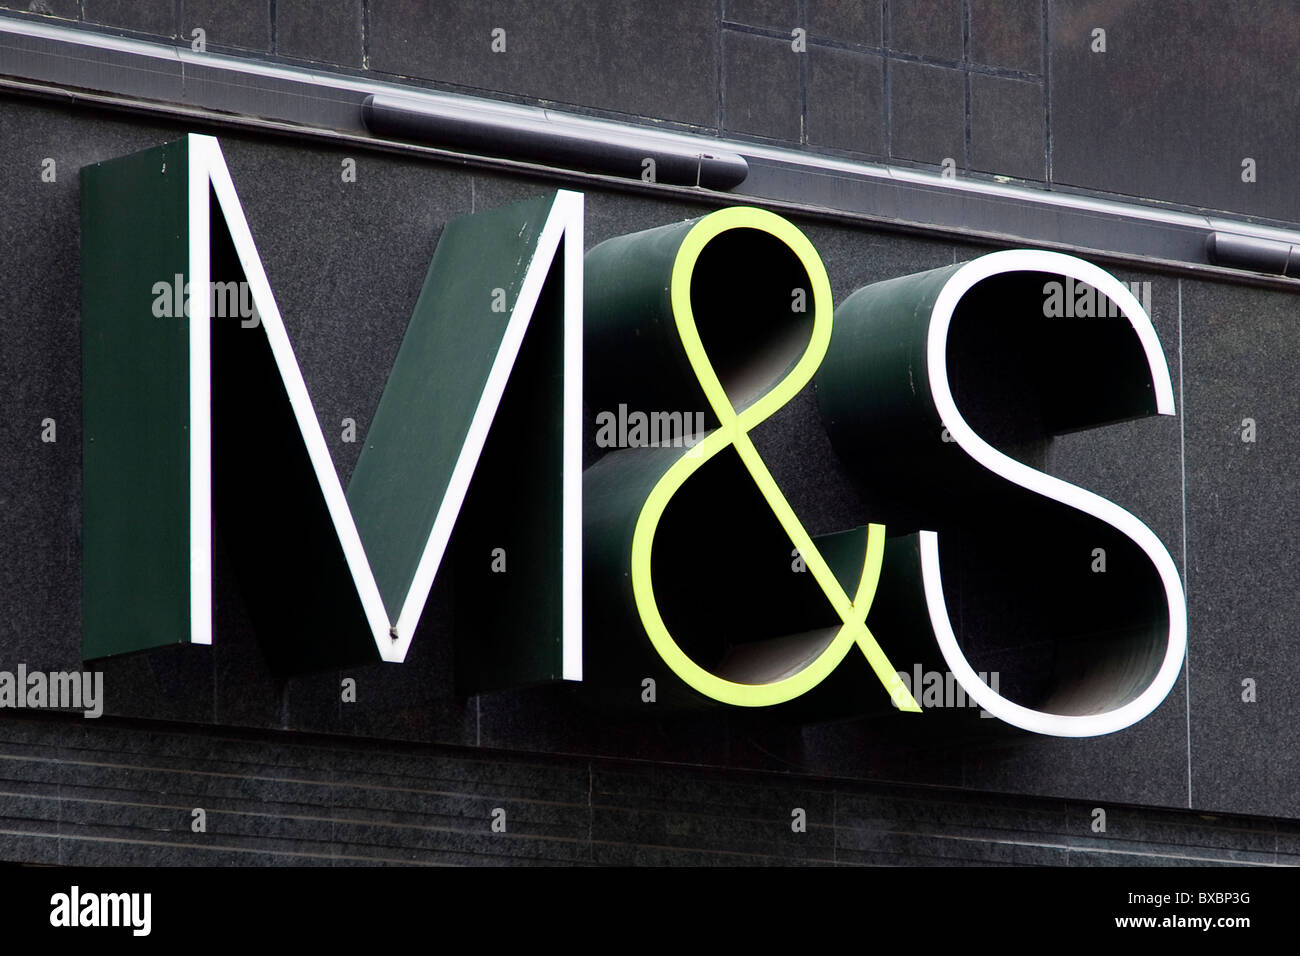 Logo sur un magasin de commerce de détail Marks and Spencer sur Oxford Street à Londres, Angleterre, Royaume-Uni, Europe Banque D'Images